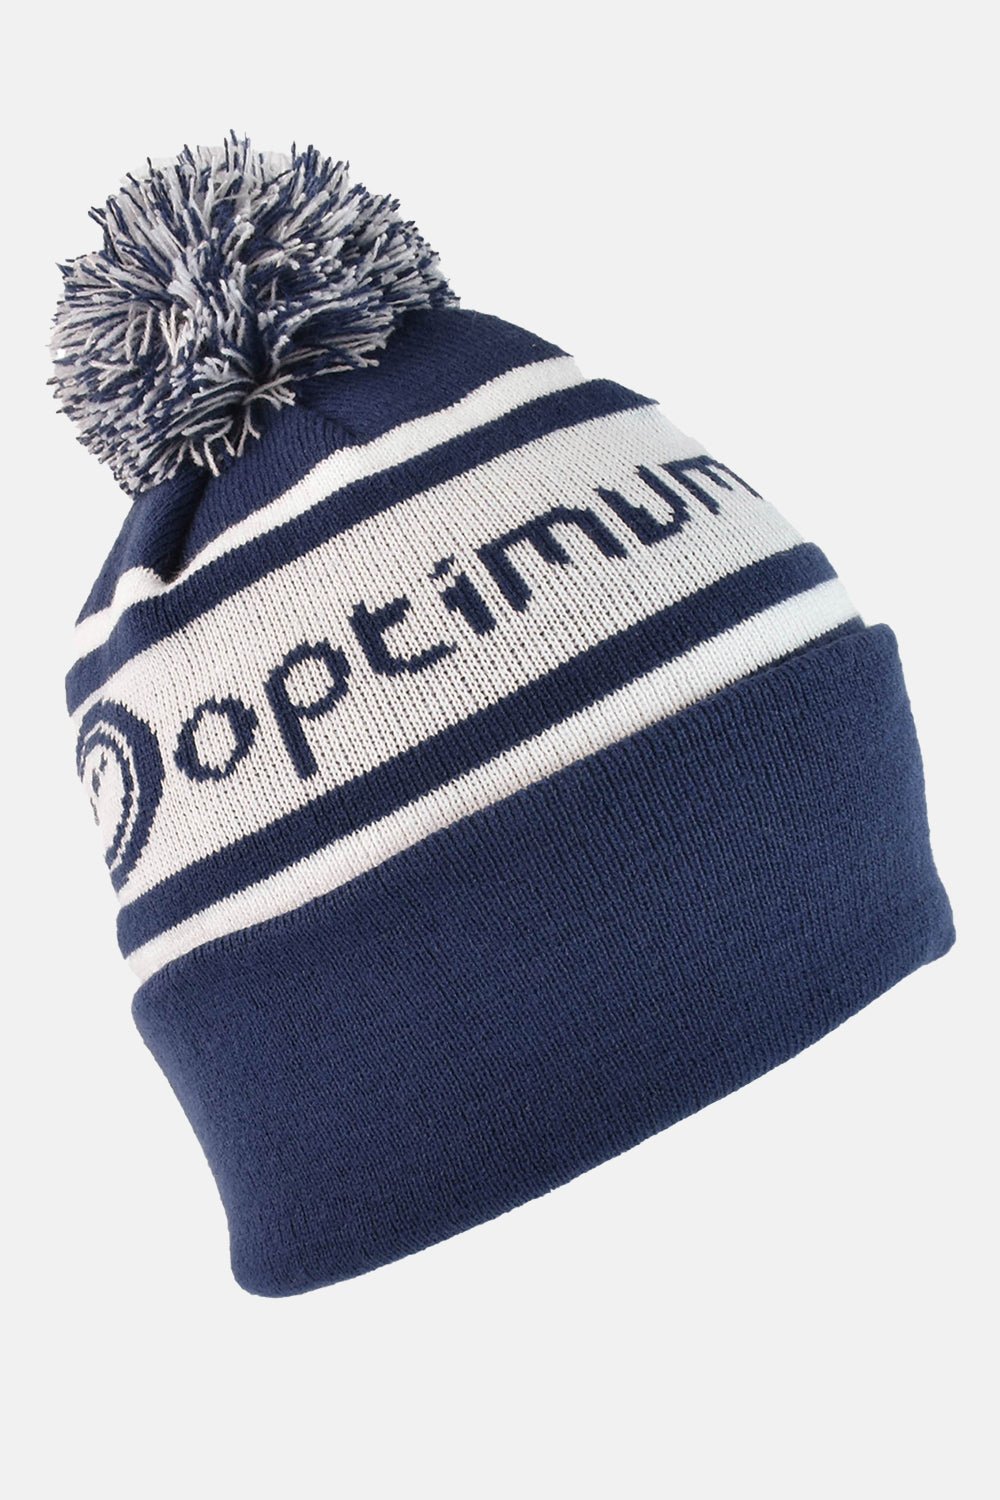 Optimum Winter Bobble Hat - Optimum